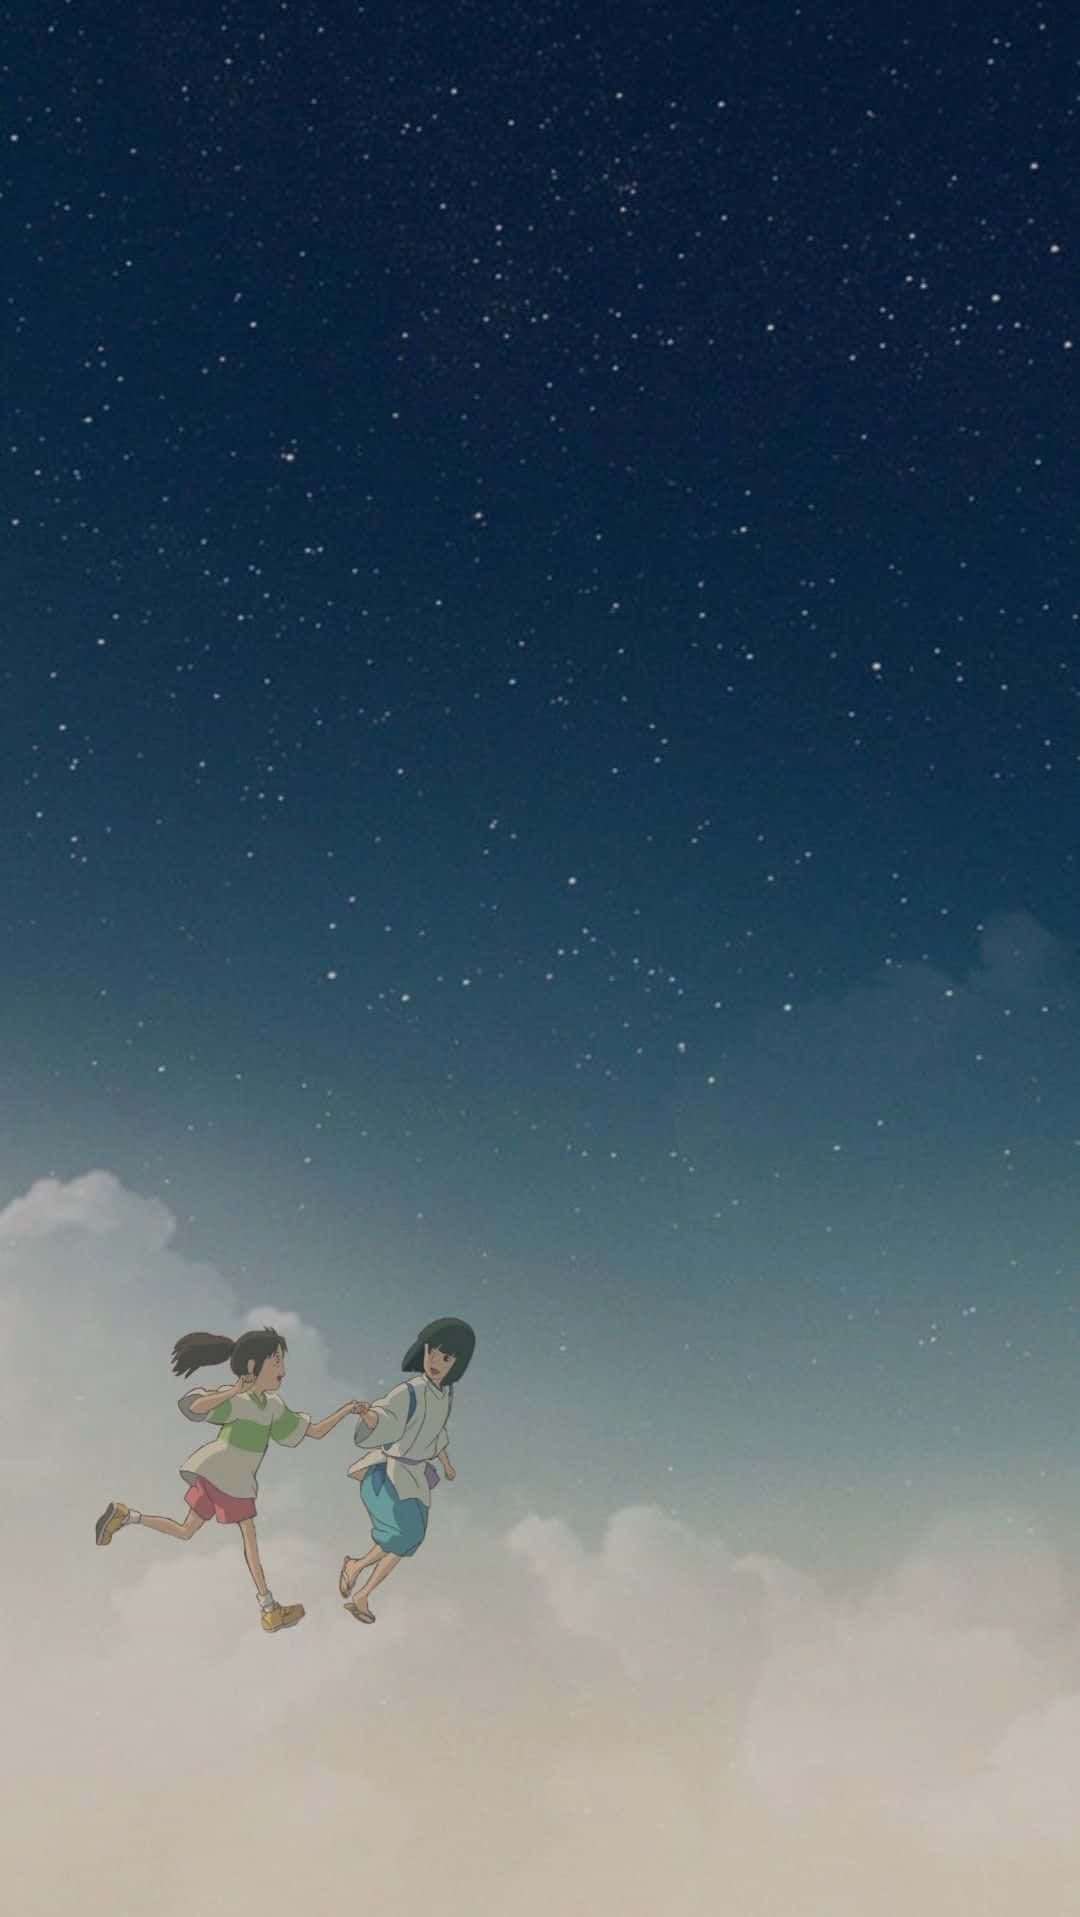 Spirited Away Studio Ghibli Karakterer Minimalist Væg Tapet Wallpaper